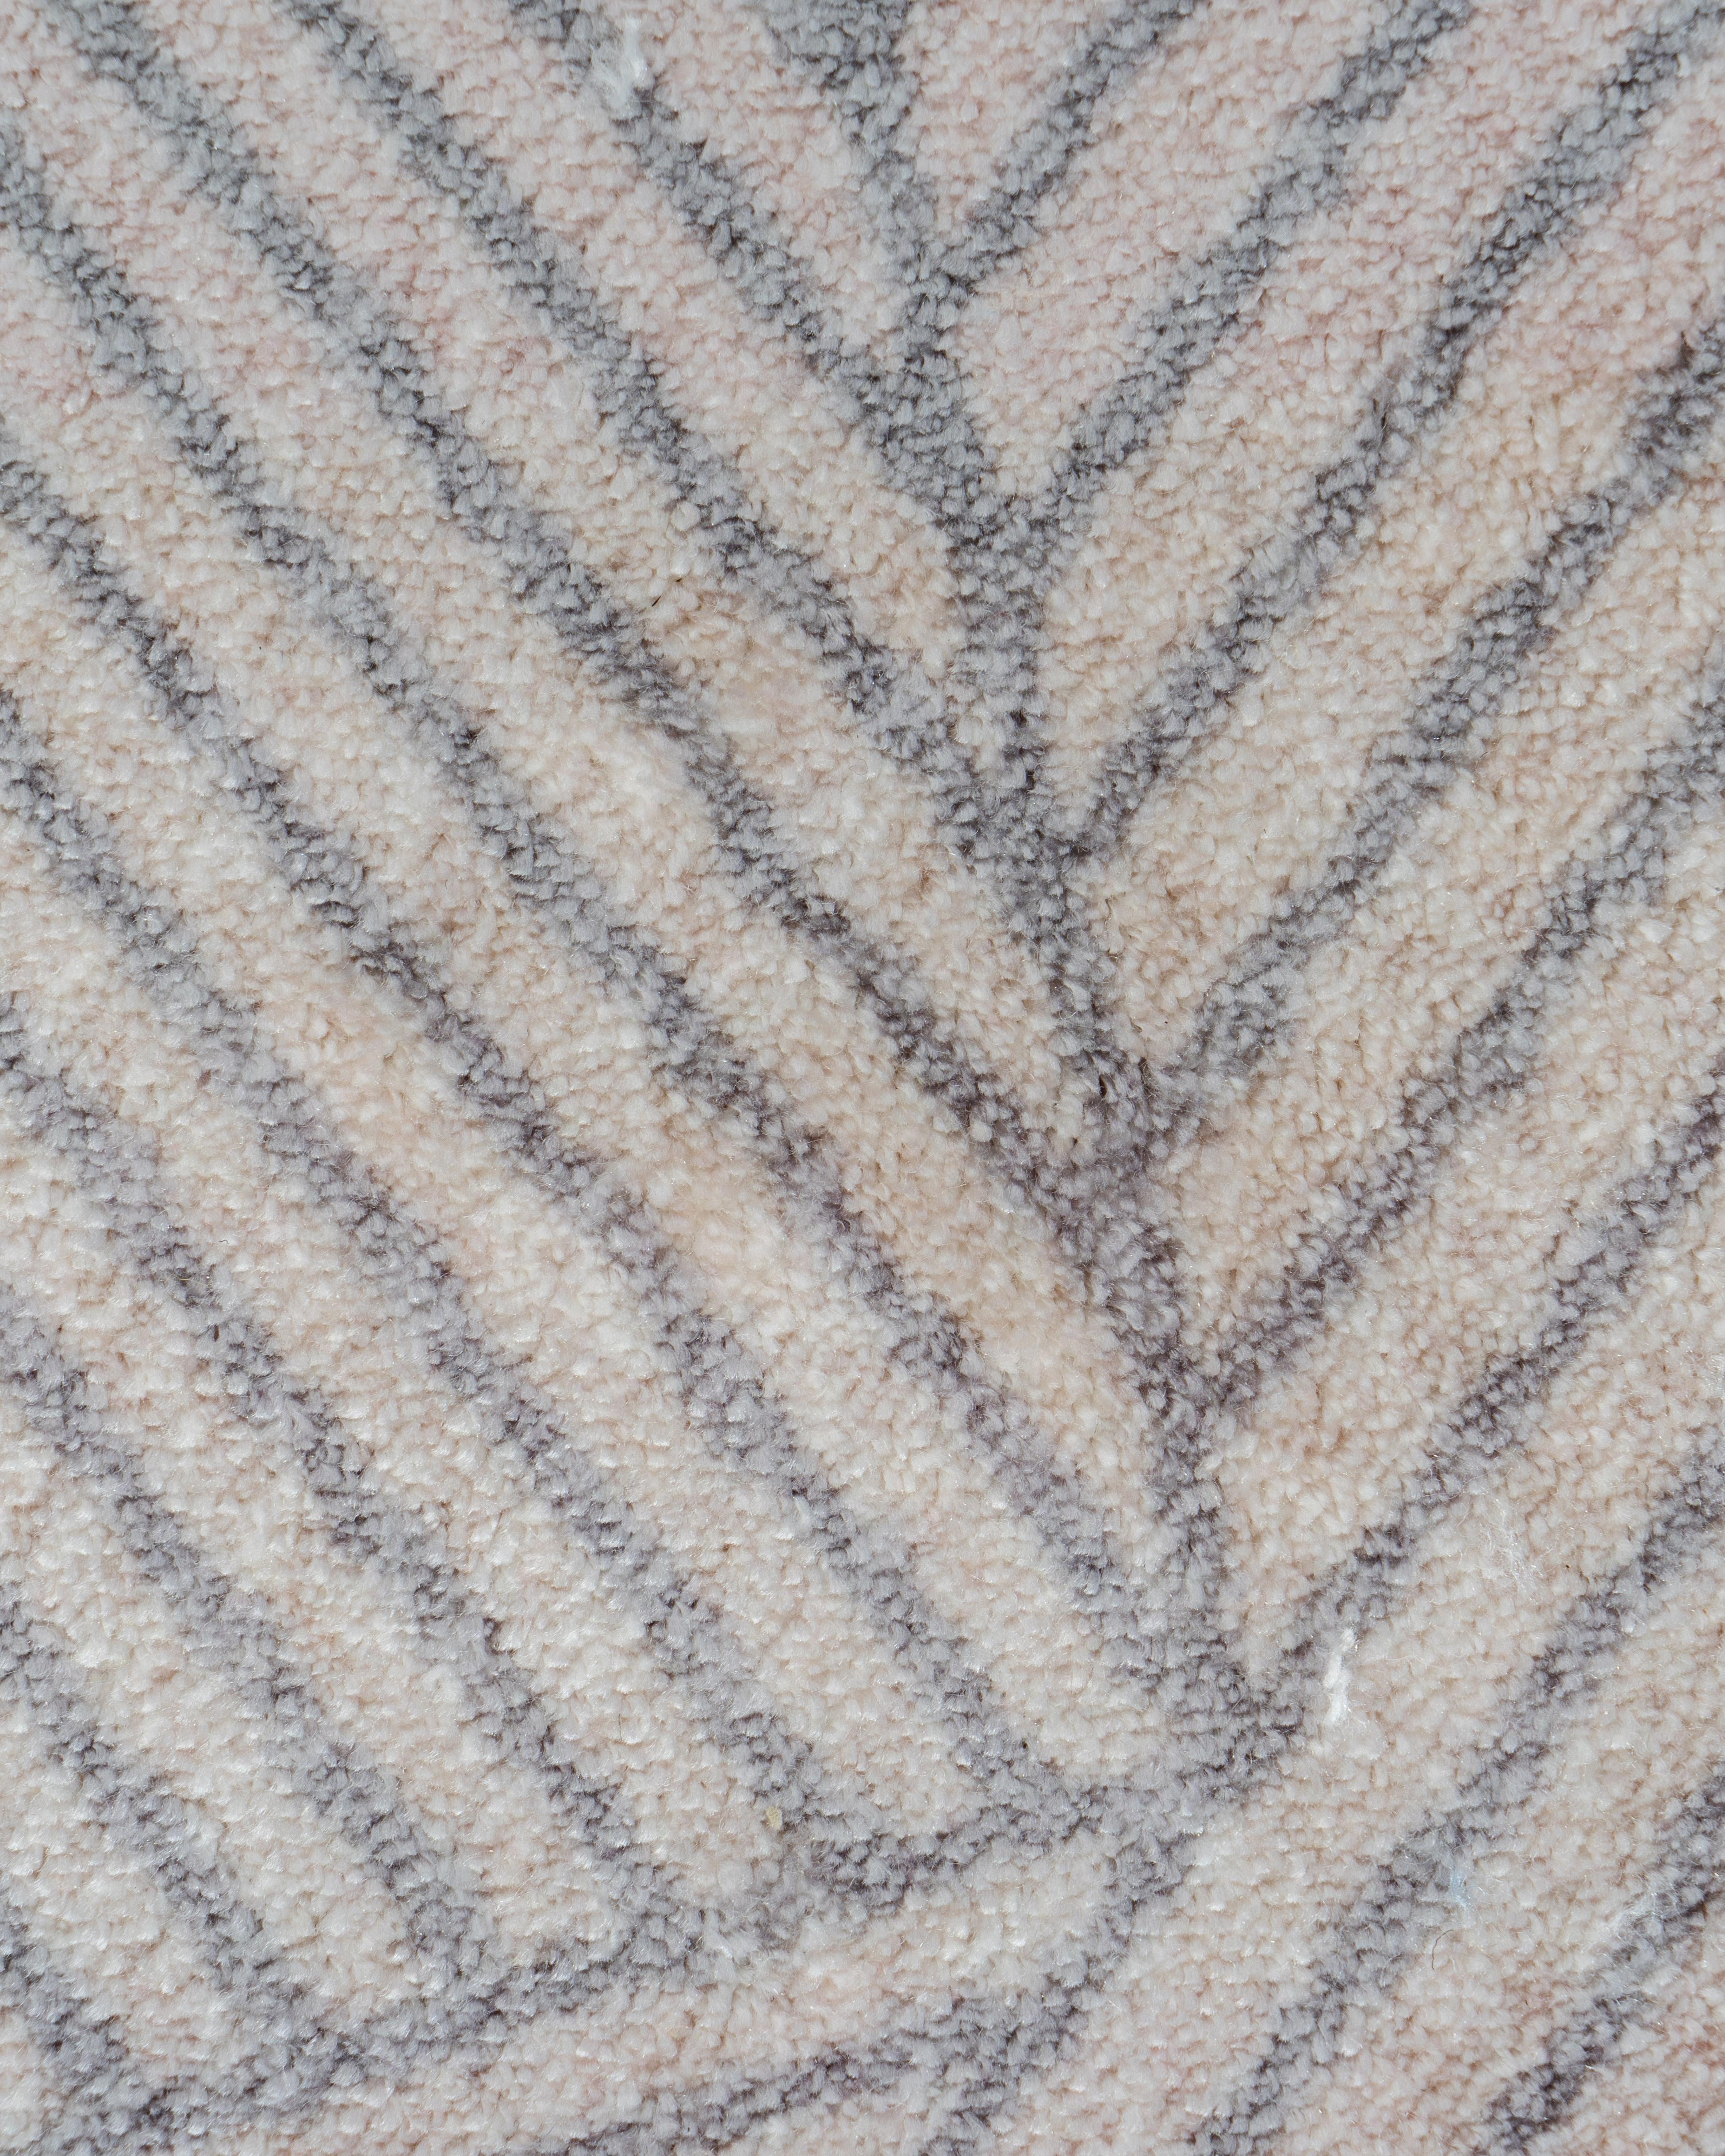 AlTappeto est la nouvelle collection de tapis conçue par Enrico Girotti pour LapiegaWD et Furnigible.
De minuscules traits qui se fondent dans des couleurs dégradées, remplissent toute la forme du tapis d'une forme inhabituelle.
AlTappeto (178 cm